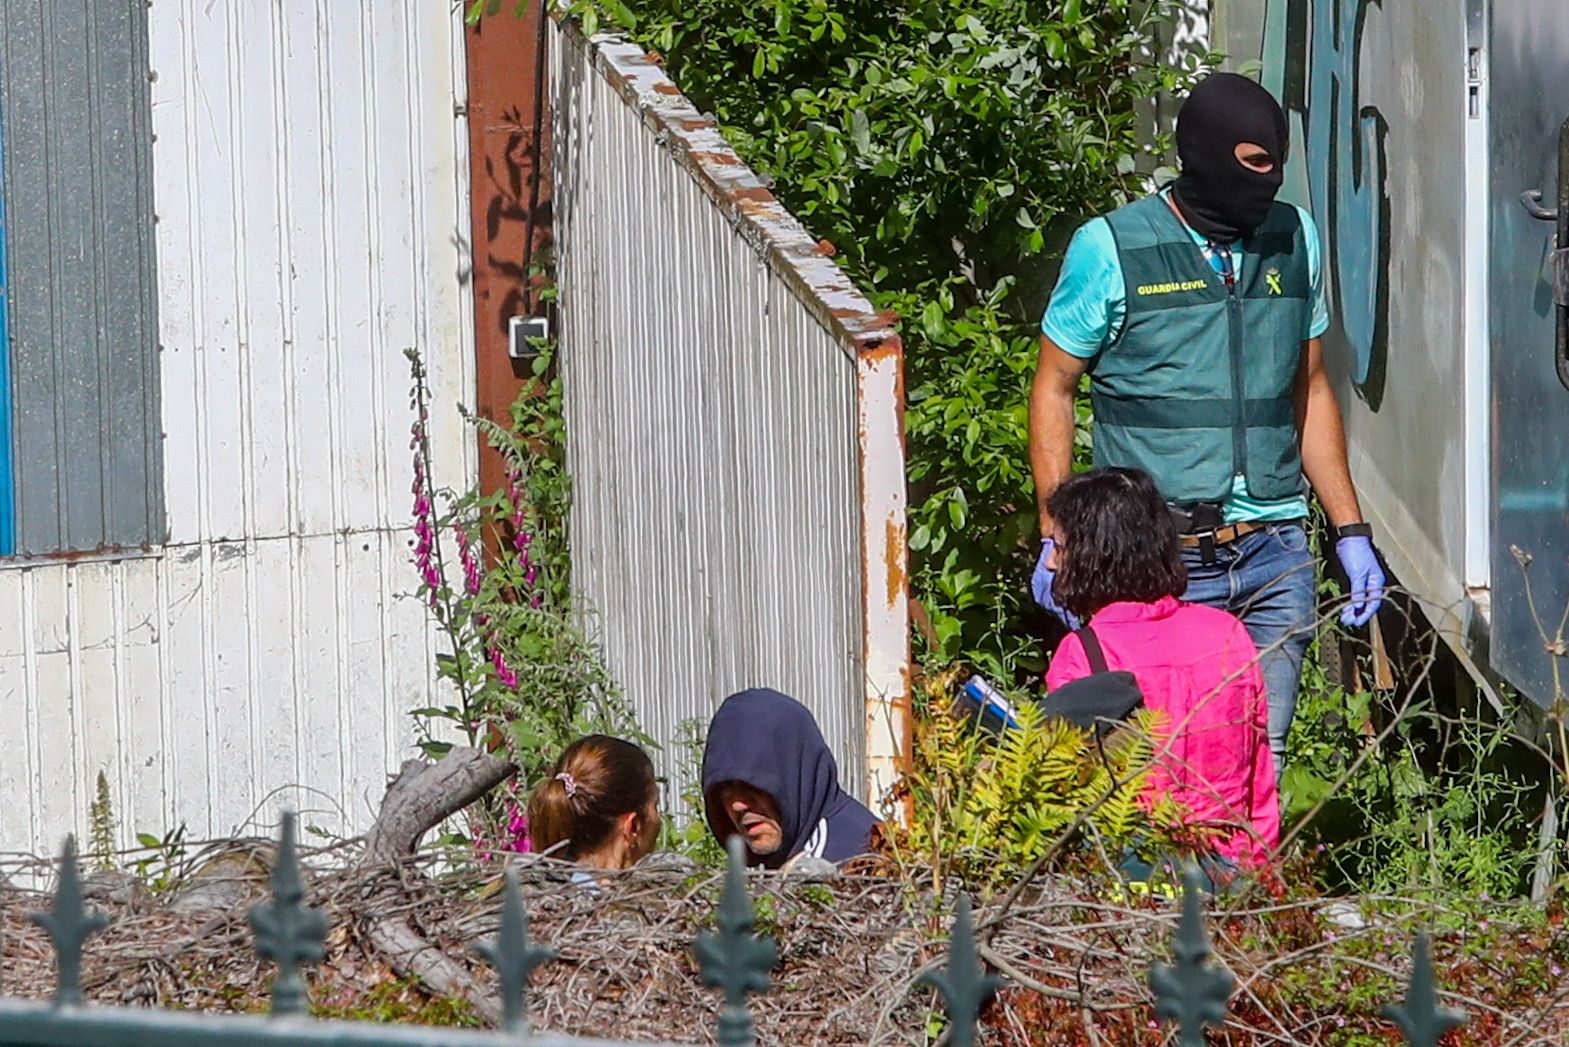 Vilagarcía, Ponteareas y Tui, escenarios de un nuevo golpe a la droga